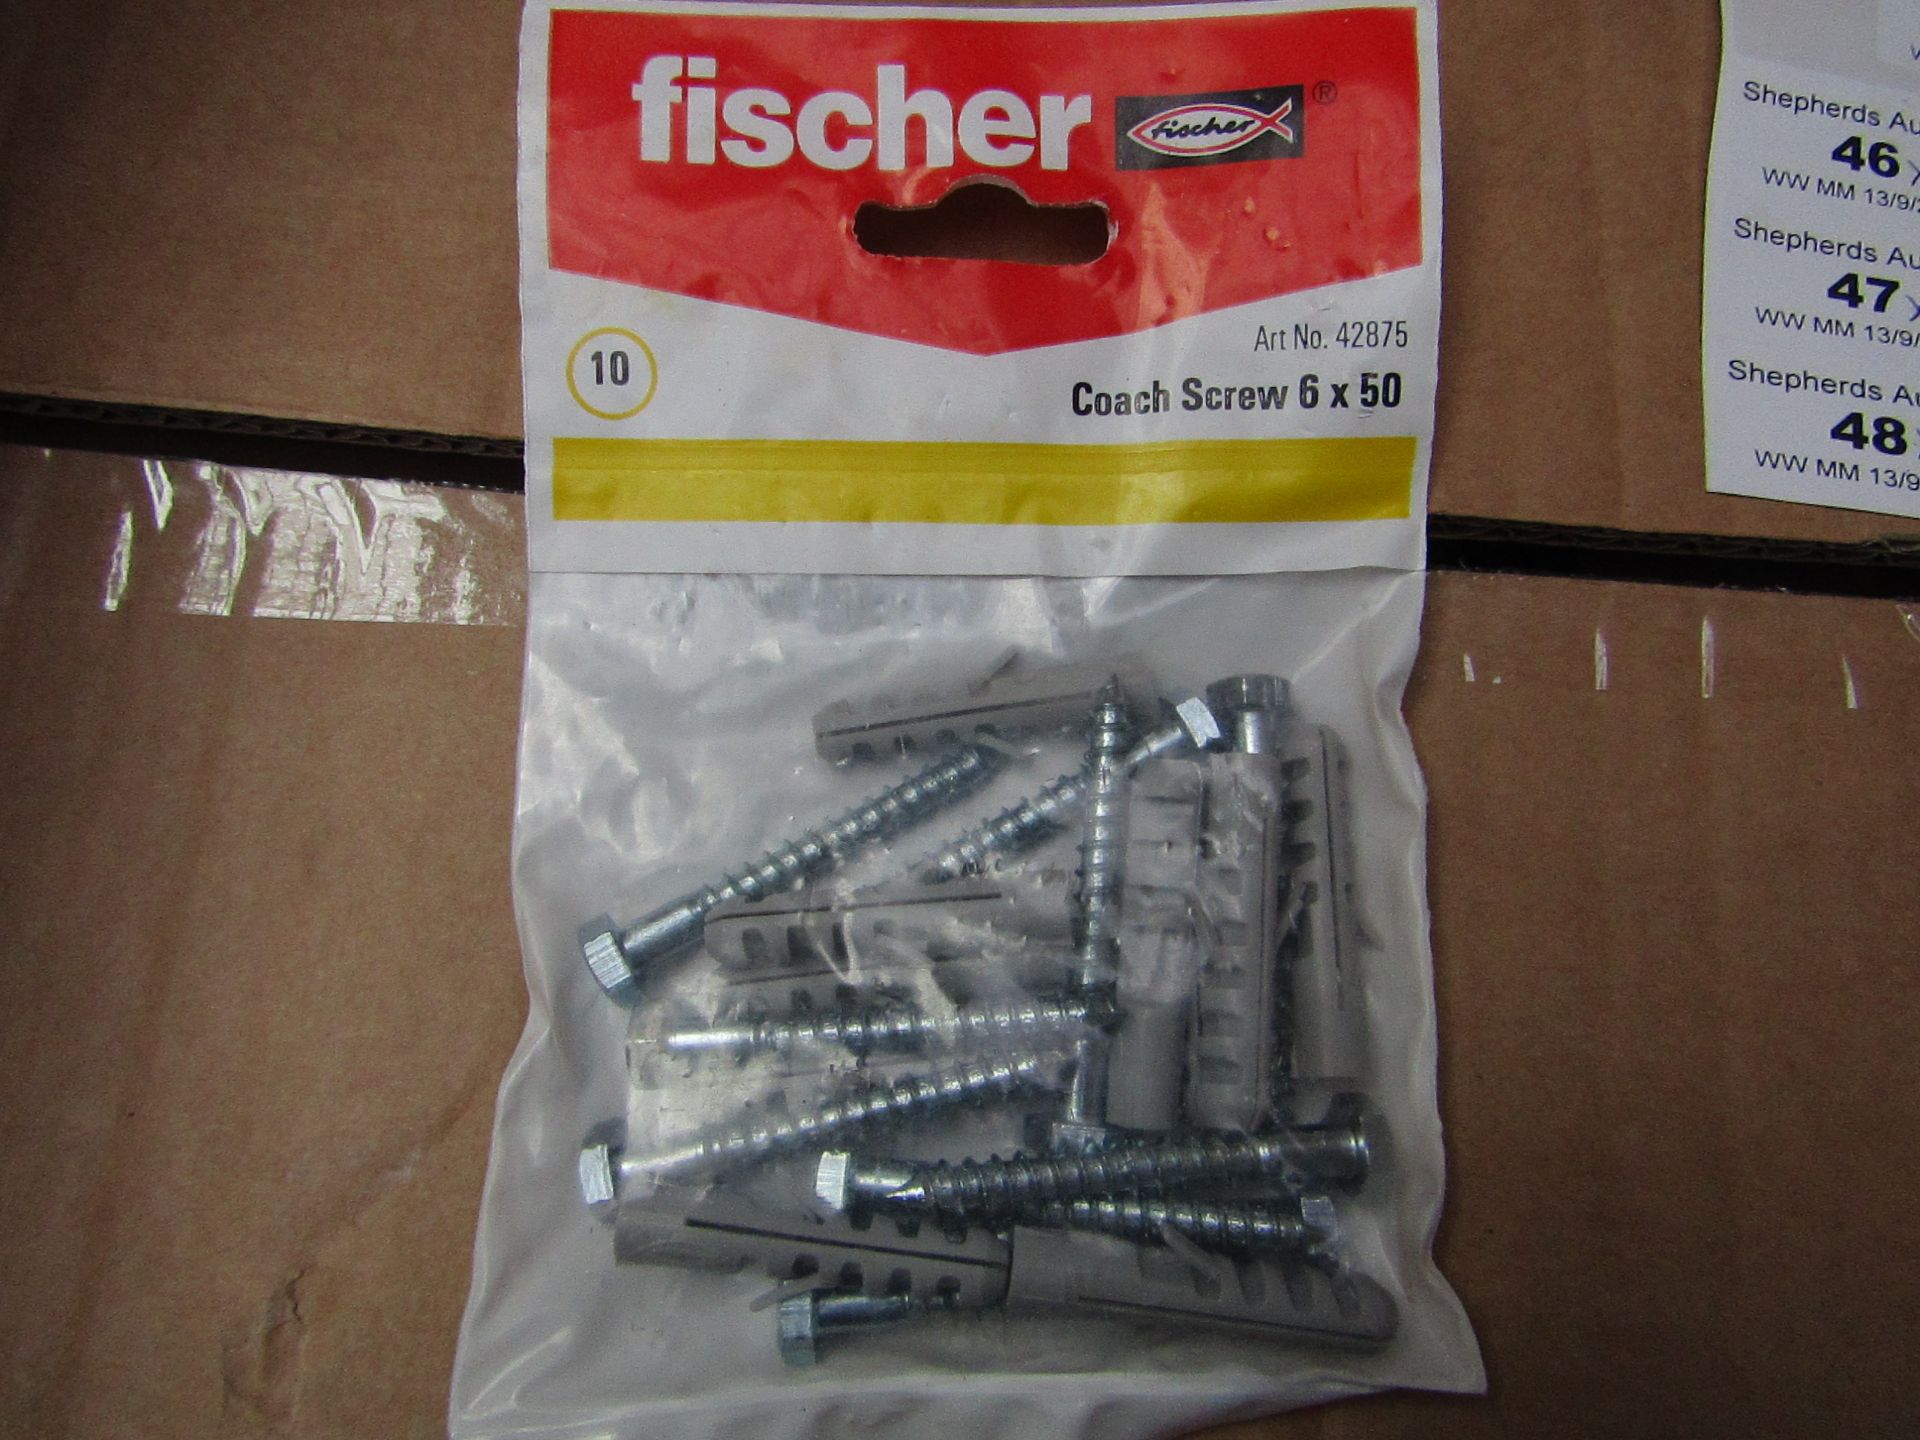 5x Fischer - Coach Screws 6 x 50 (Packs of 10) - New & Packaged.